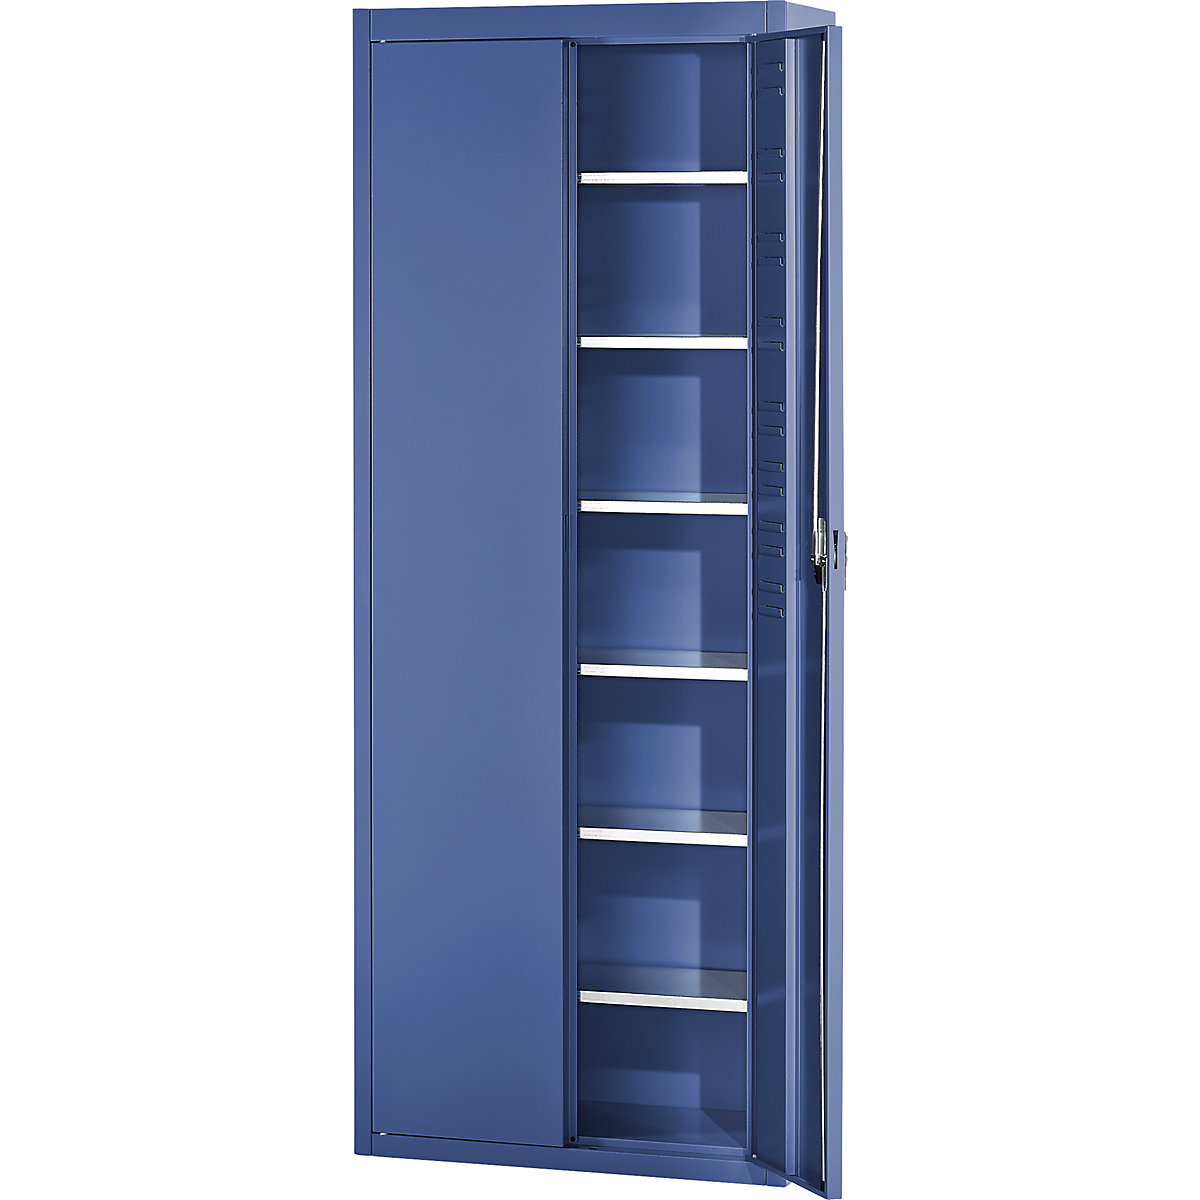 Skladišni ormar bez otvorenih skladišnih kutija – mauser, VxŠxD 2150 x 680 x 280 mm, u jednoj boji, u plavoj boji-1